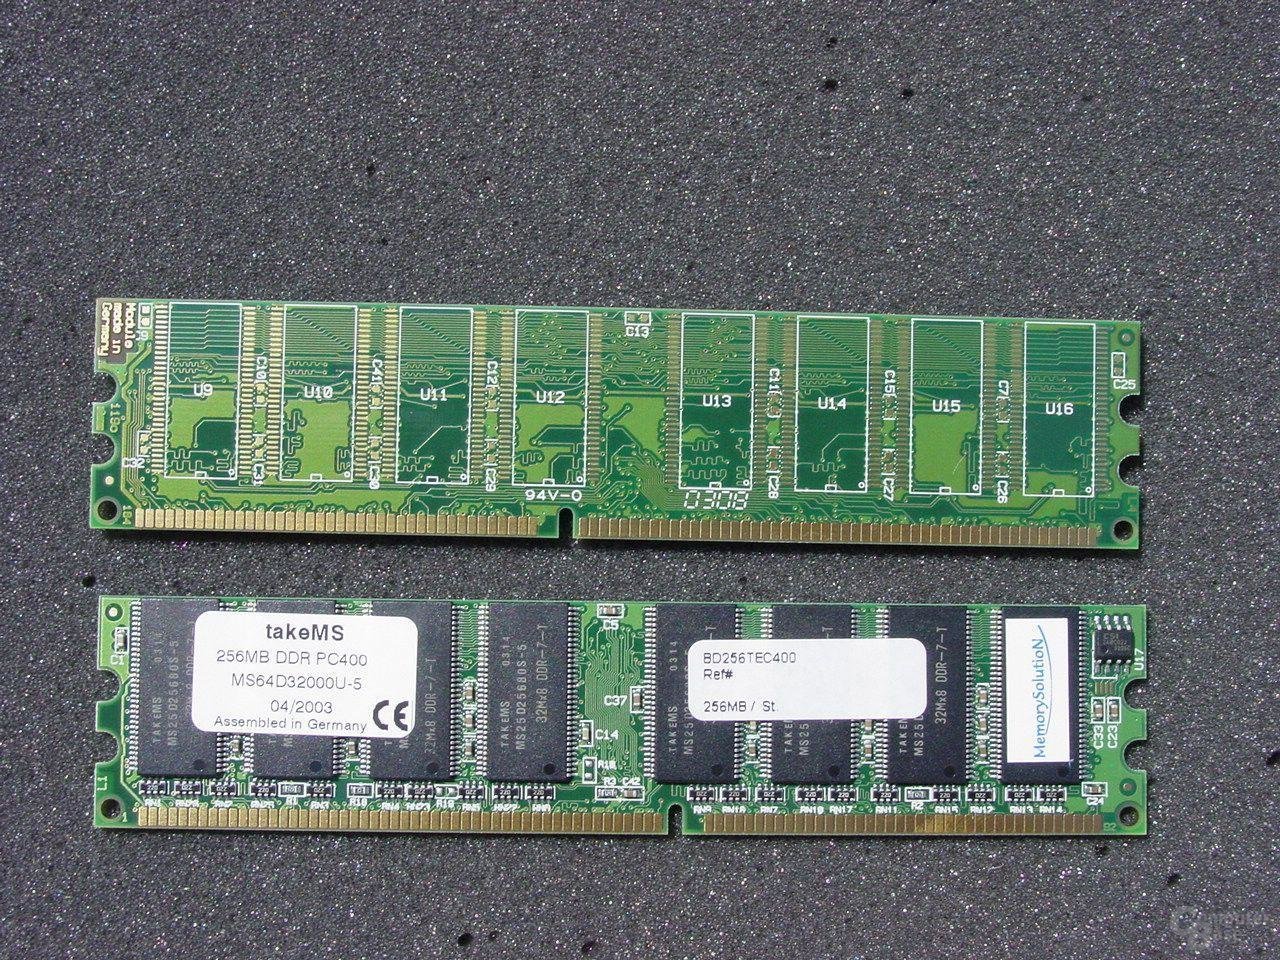 takeMS DDR400